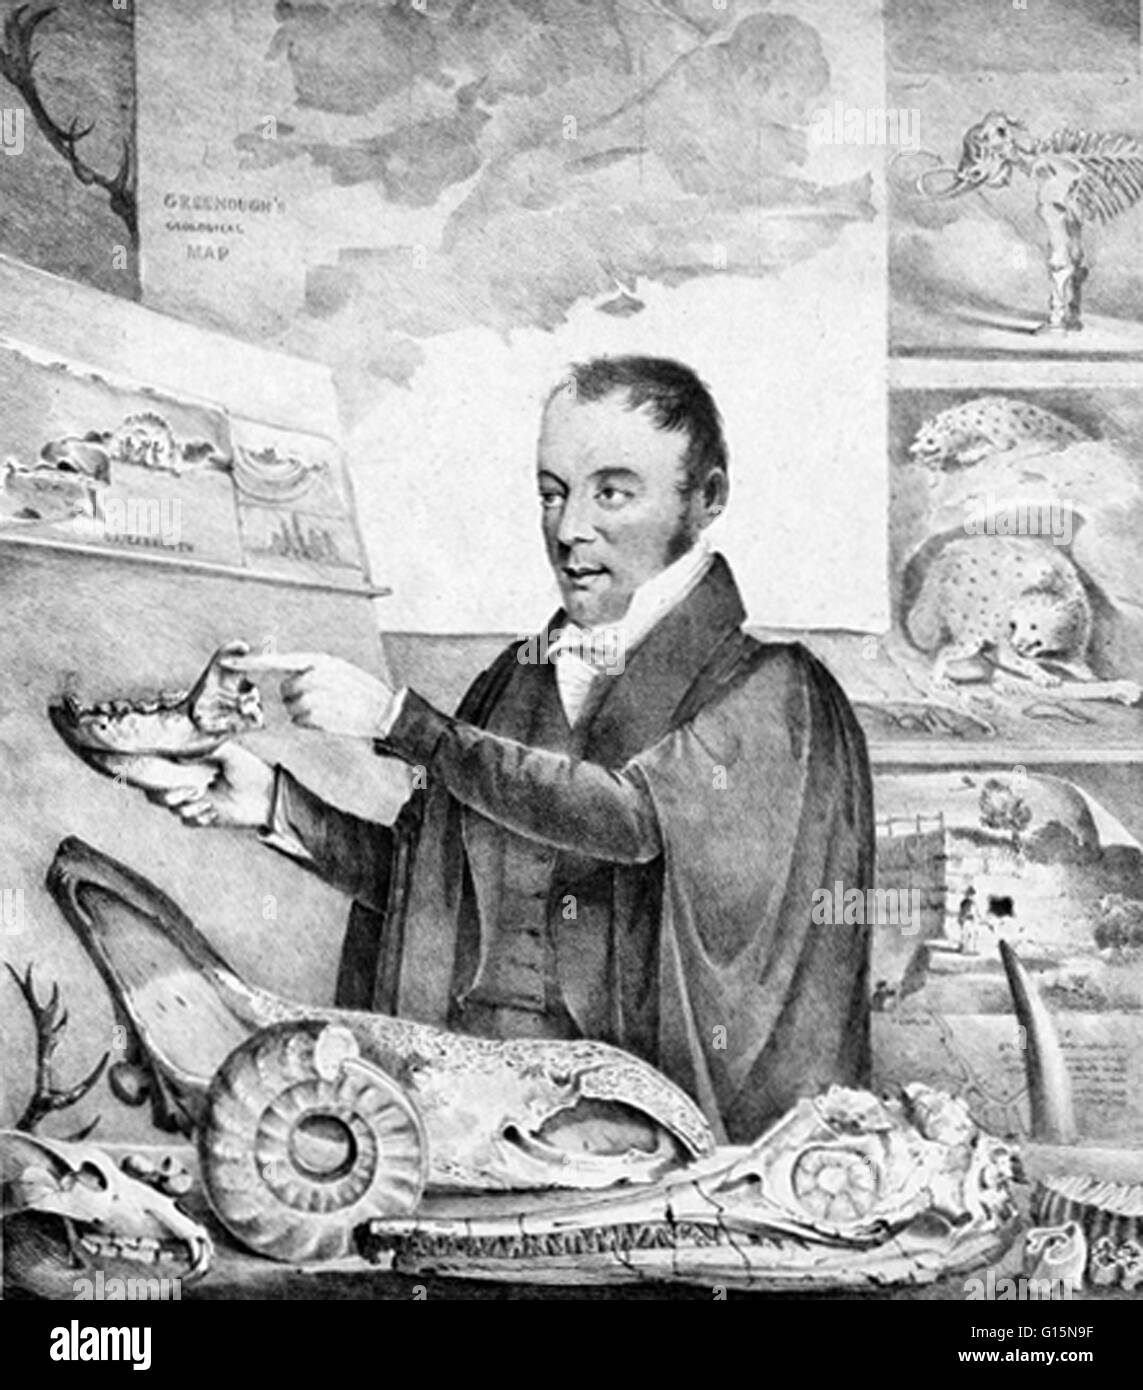 Buckland, einen Vortrag über Fossilien und einige der Exemplare seiner Preis anzeigen. Der lange Schnabel Schädel an der Vorderseite ist ein Ichthyosaurier, ein marine Reptil, das gehörte zu einer separaten Gruppe von den Dinosauriern. William Buckland (12. März 1784 - 14 August 185 Stockfoto